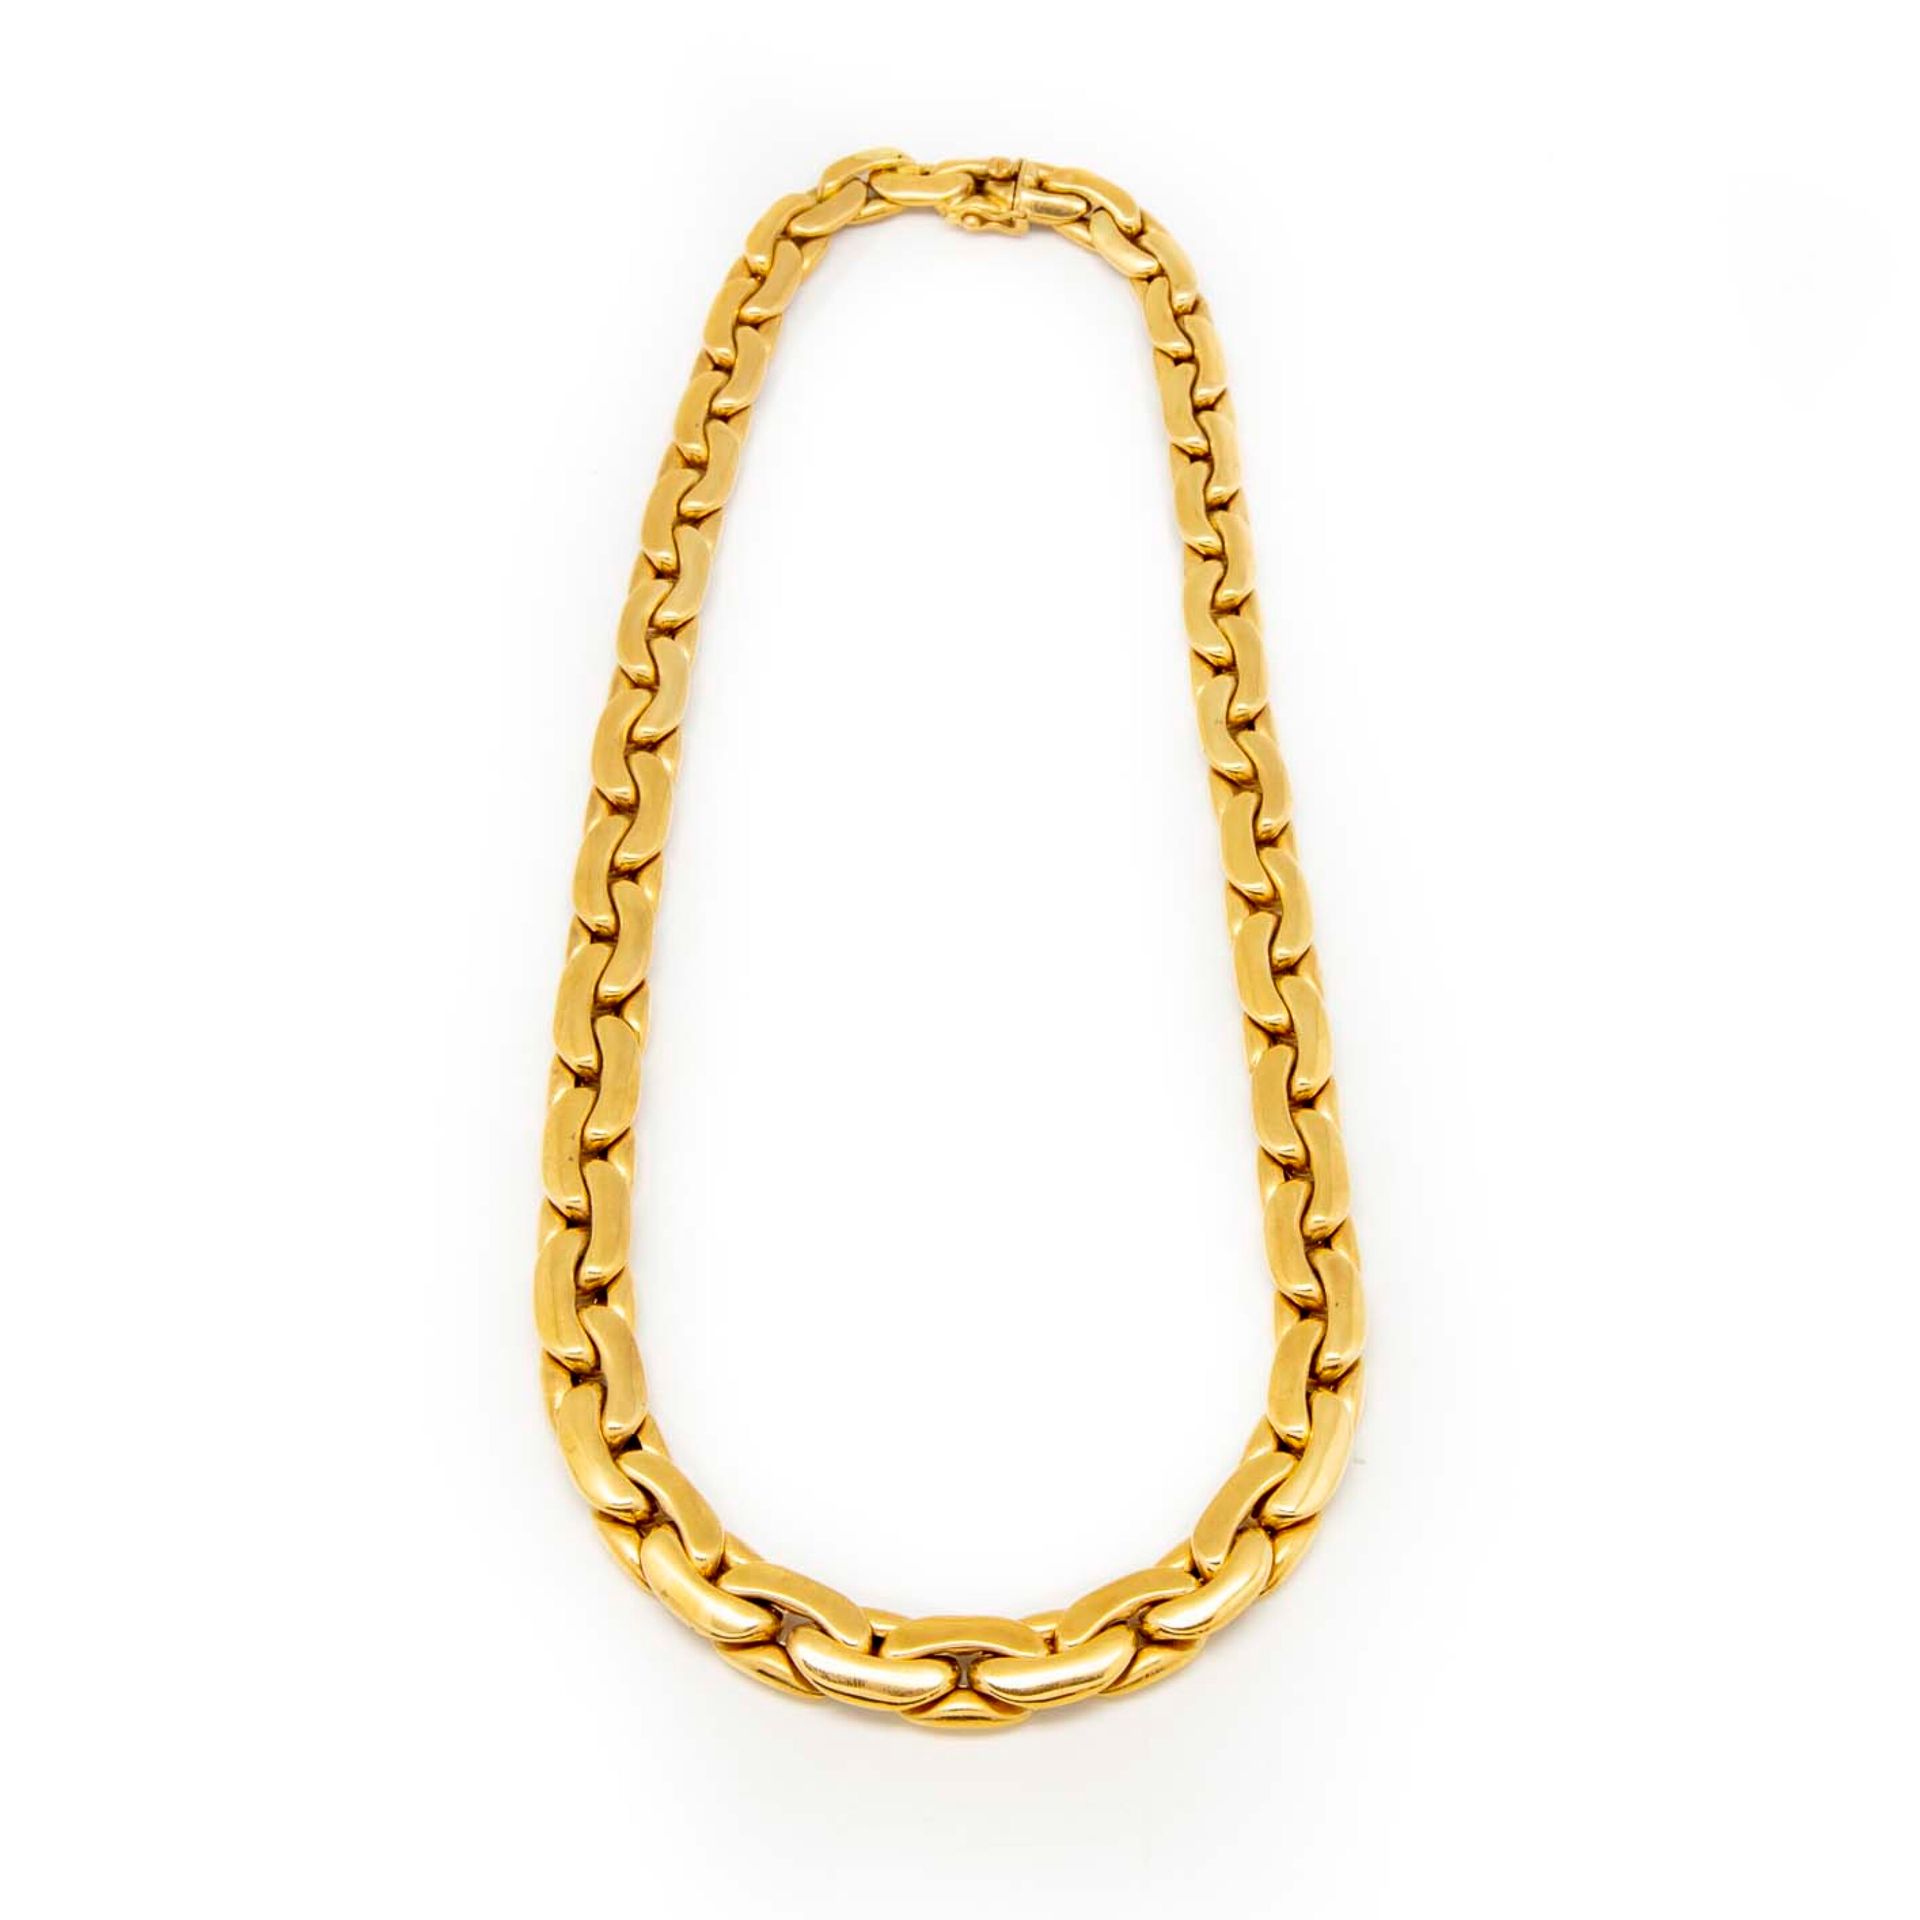 Null Collar de oro amarillo con eslabones planos articulados

Peso : 62 g.